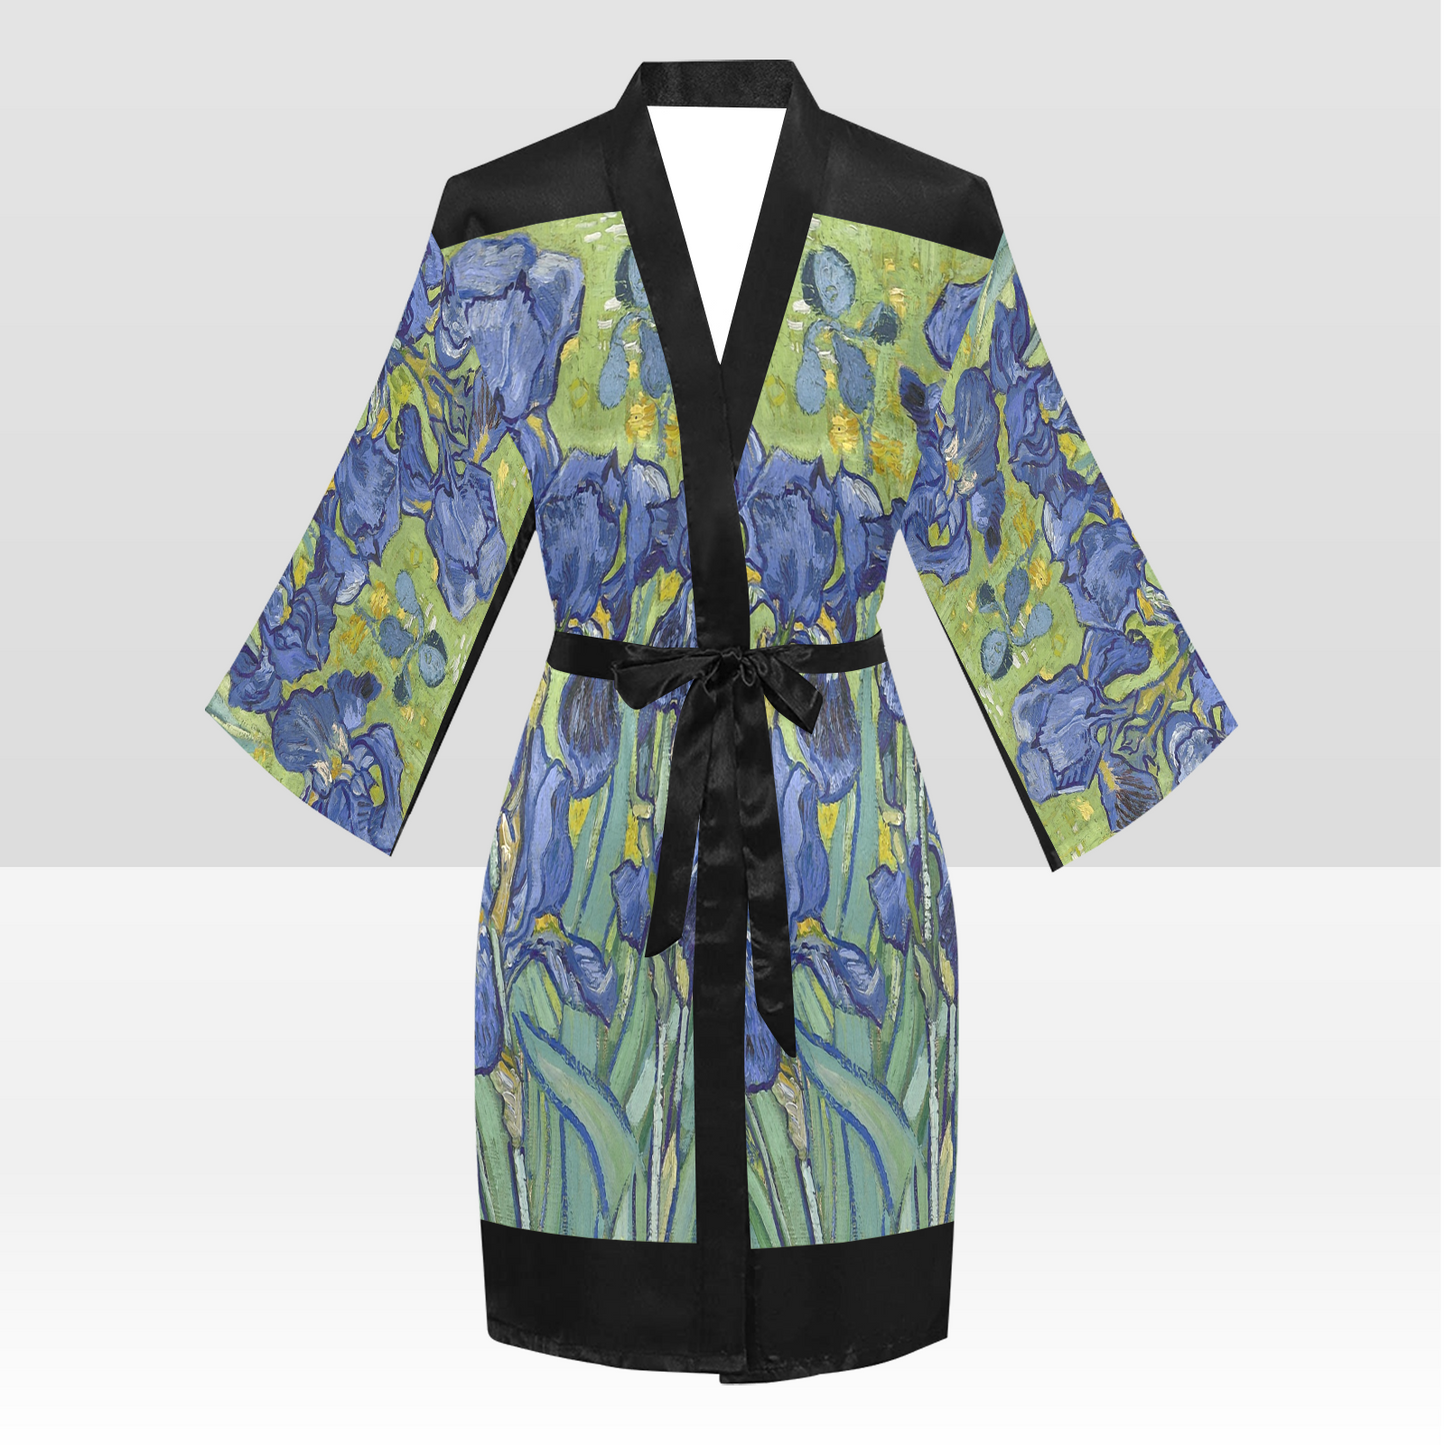 Vintage Floral Kimono Robe, Black or White Trim, Sizes XS to 2XL, Design 40